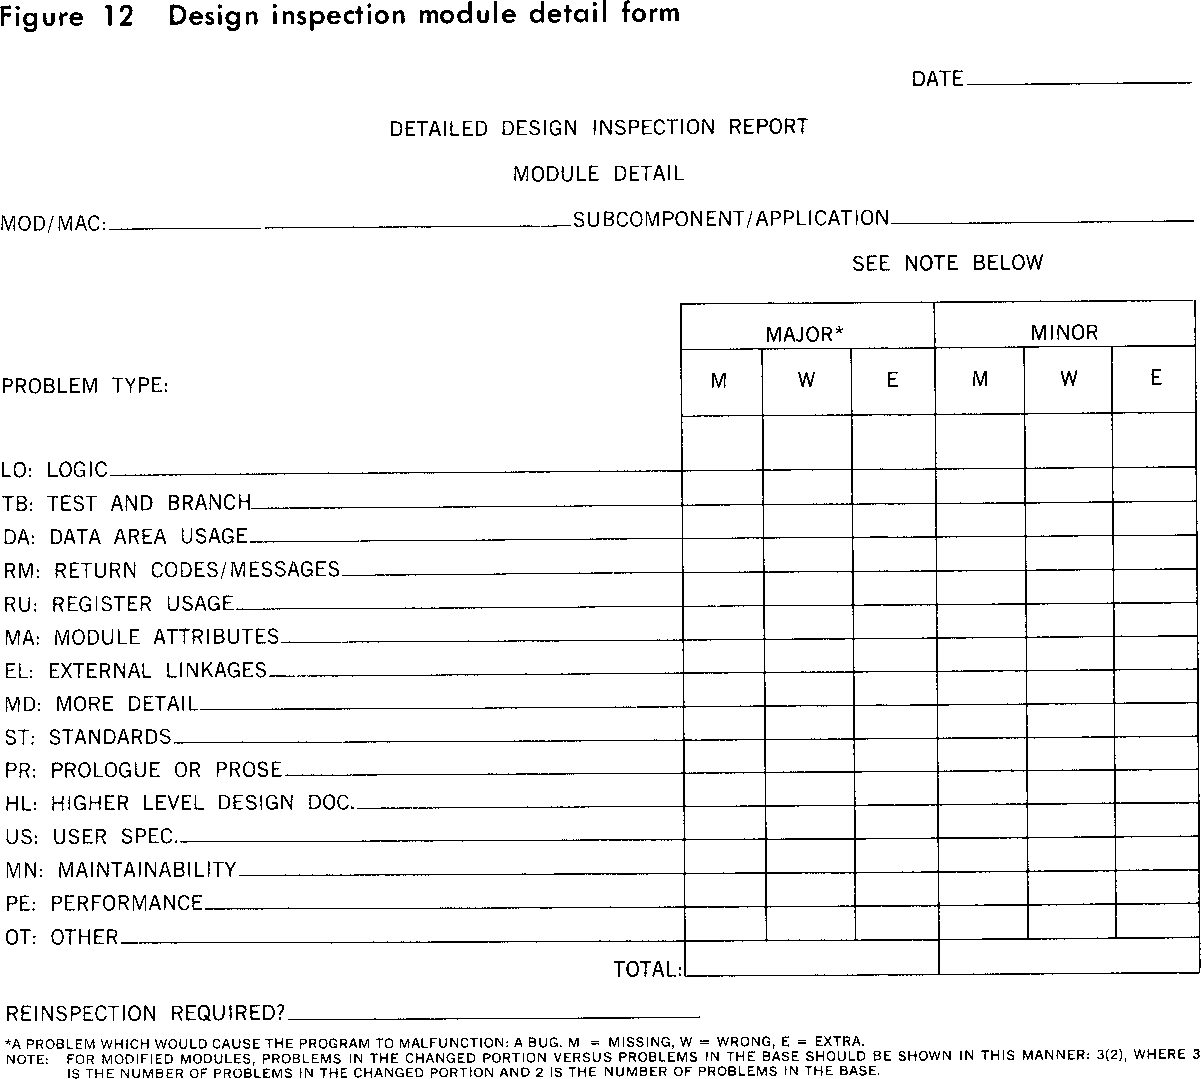 Figure 12 Design inspection module detail form